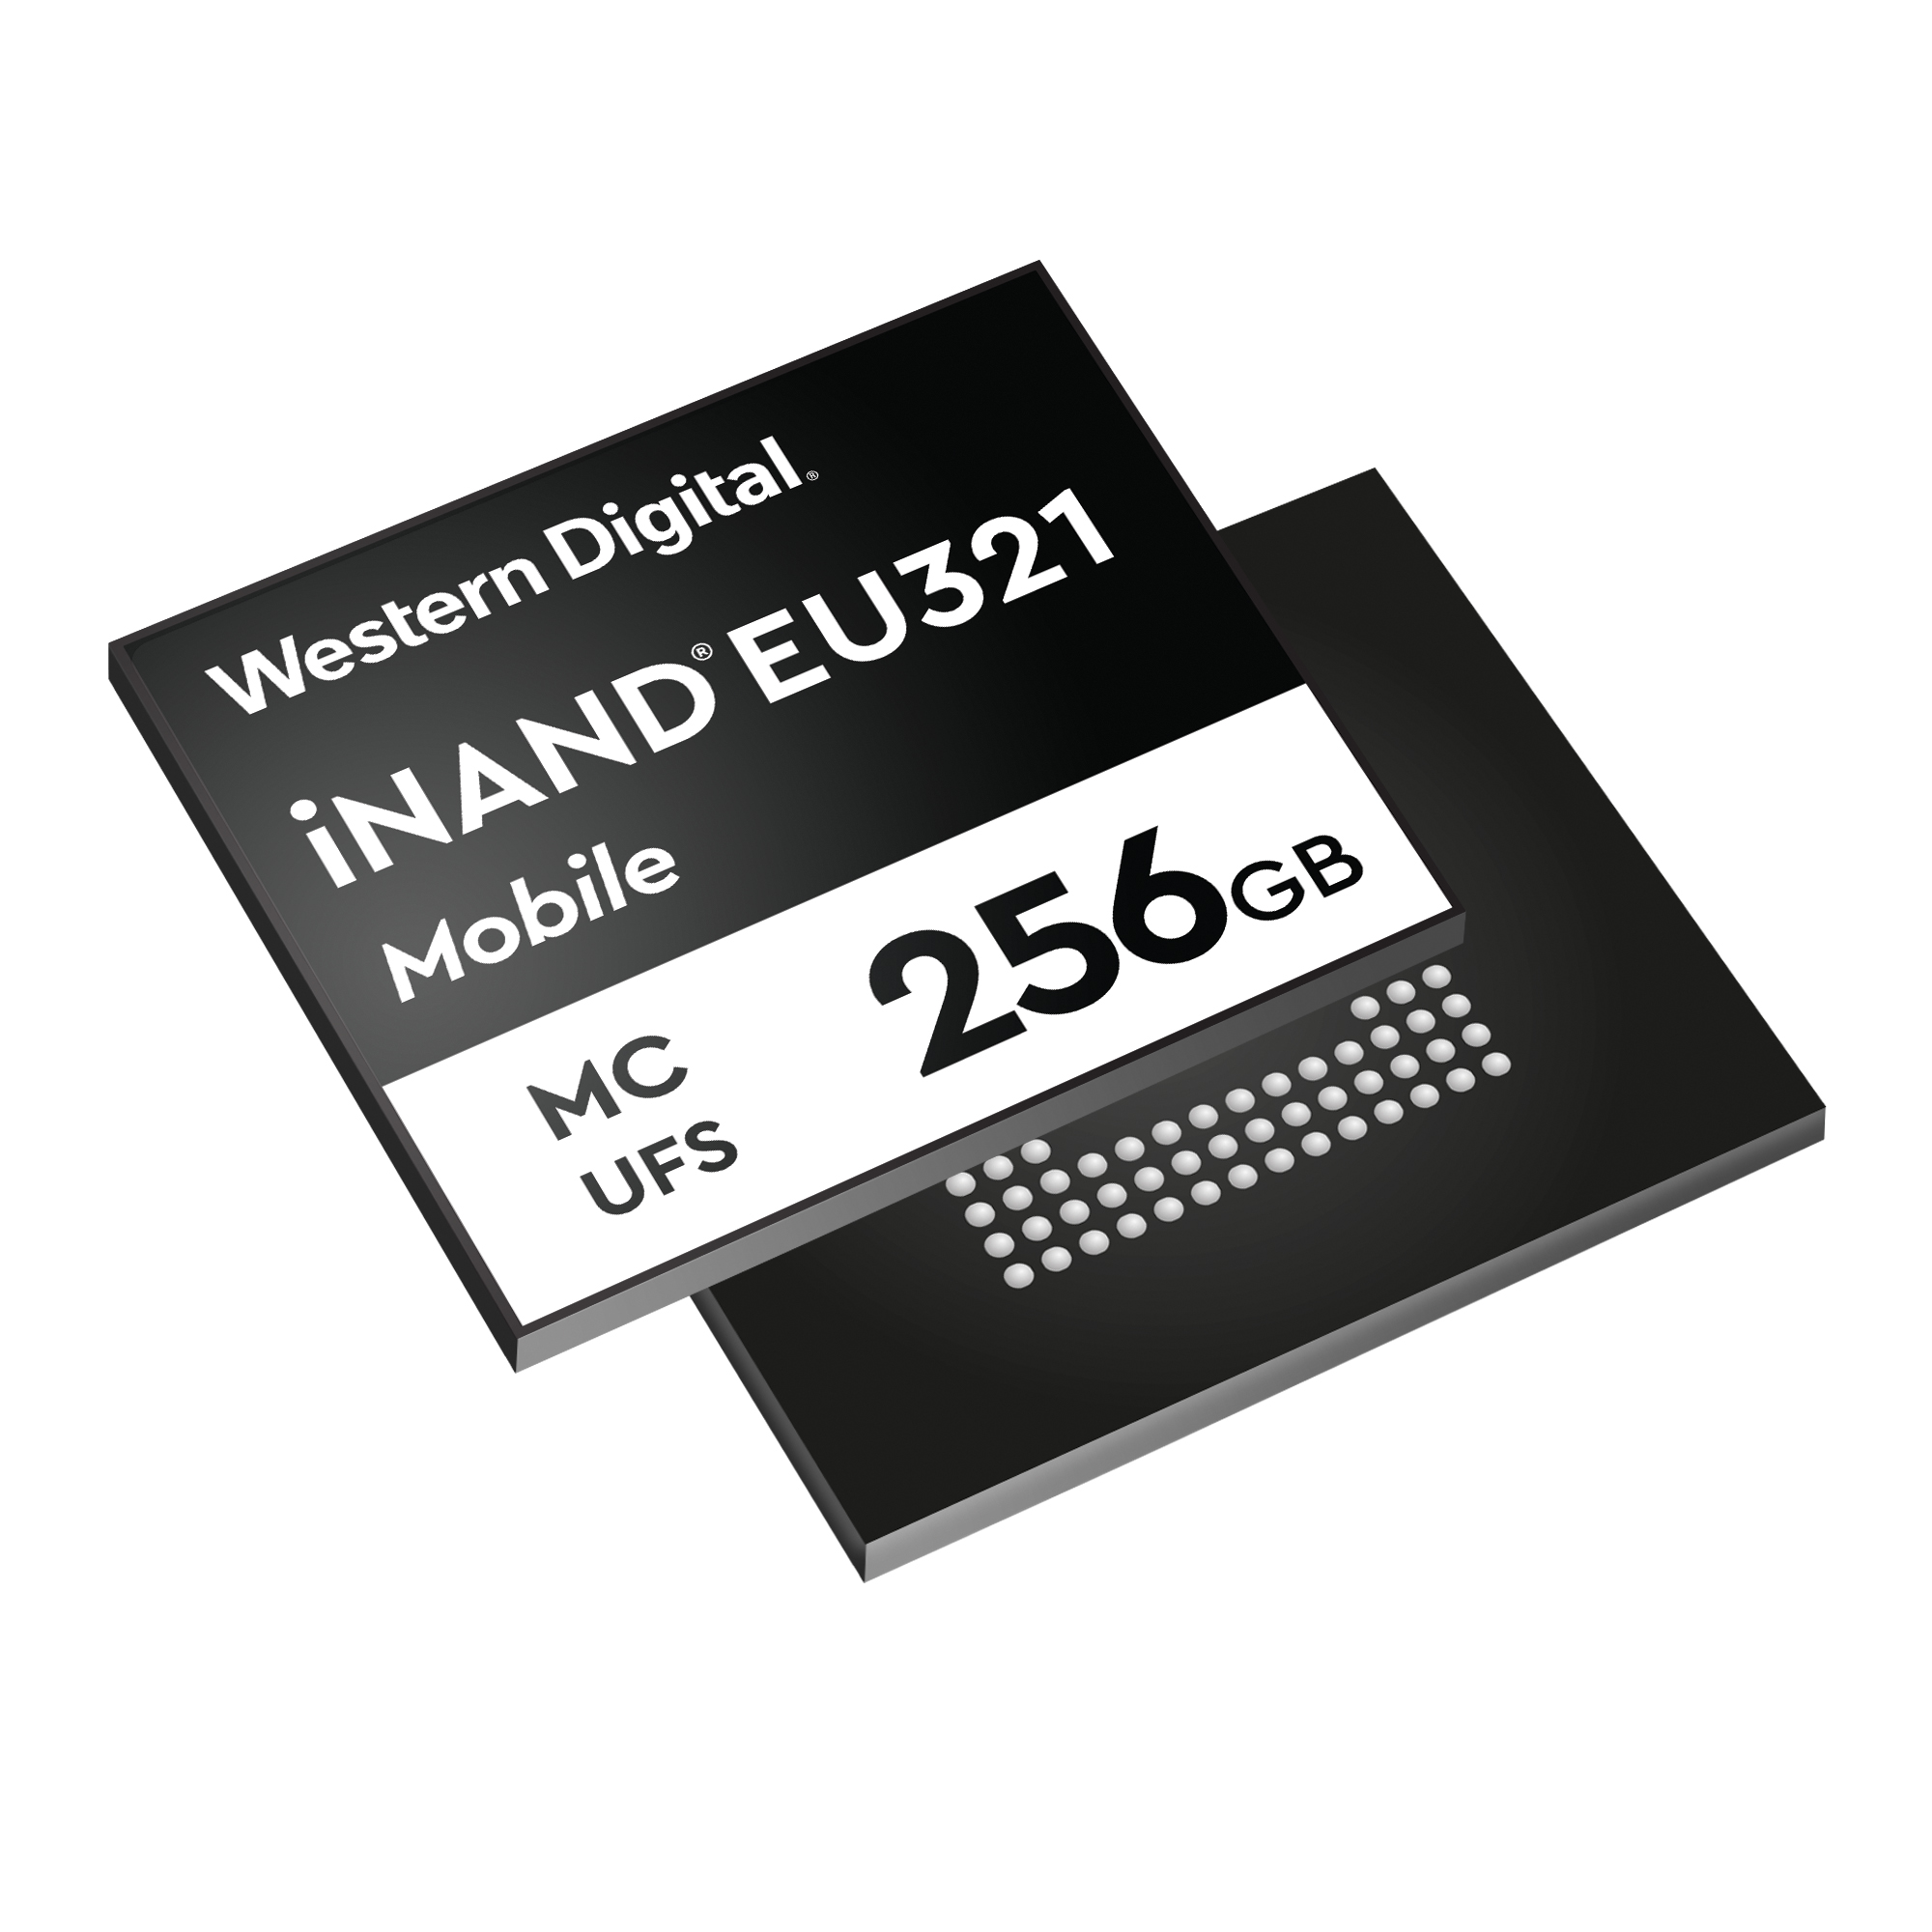 目標高階智慧型手機市場 Western Digital推出業界首創96層3D NAND UFS 2.1嵌入式快閃記憶體